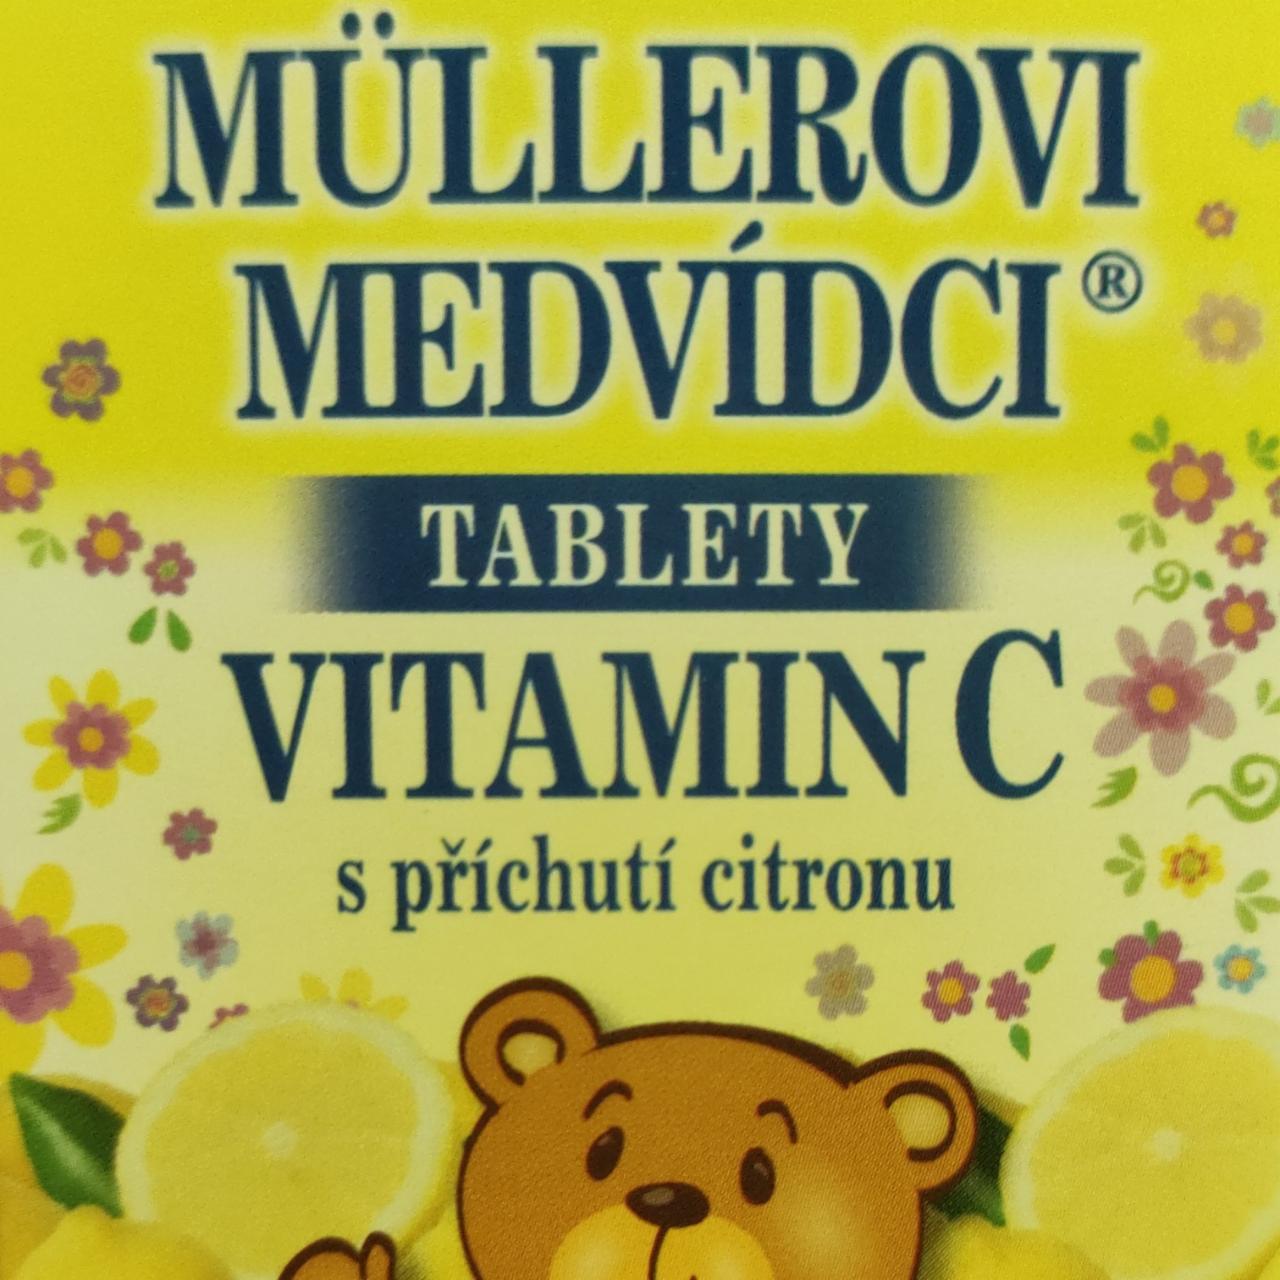 Fotografie - Müllerovi medvídci tablety Vitamin C s příchutí citronu